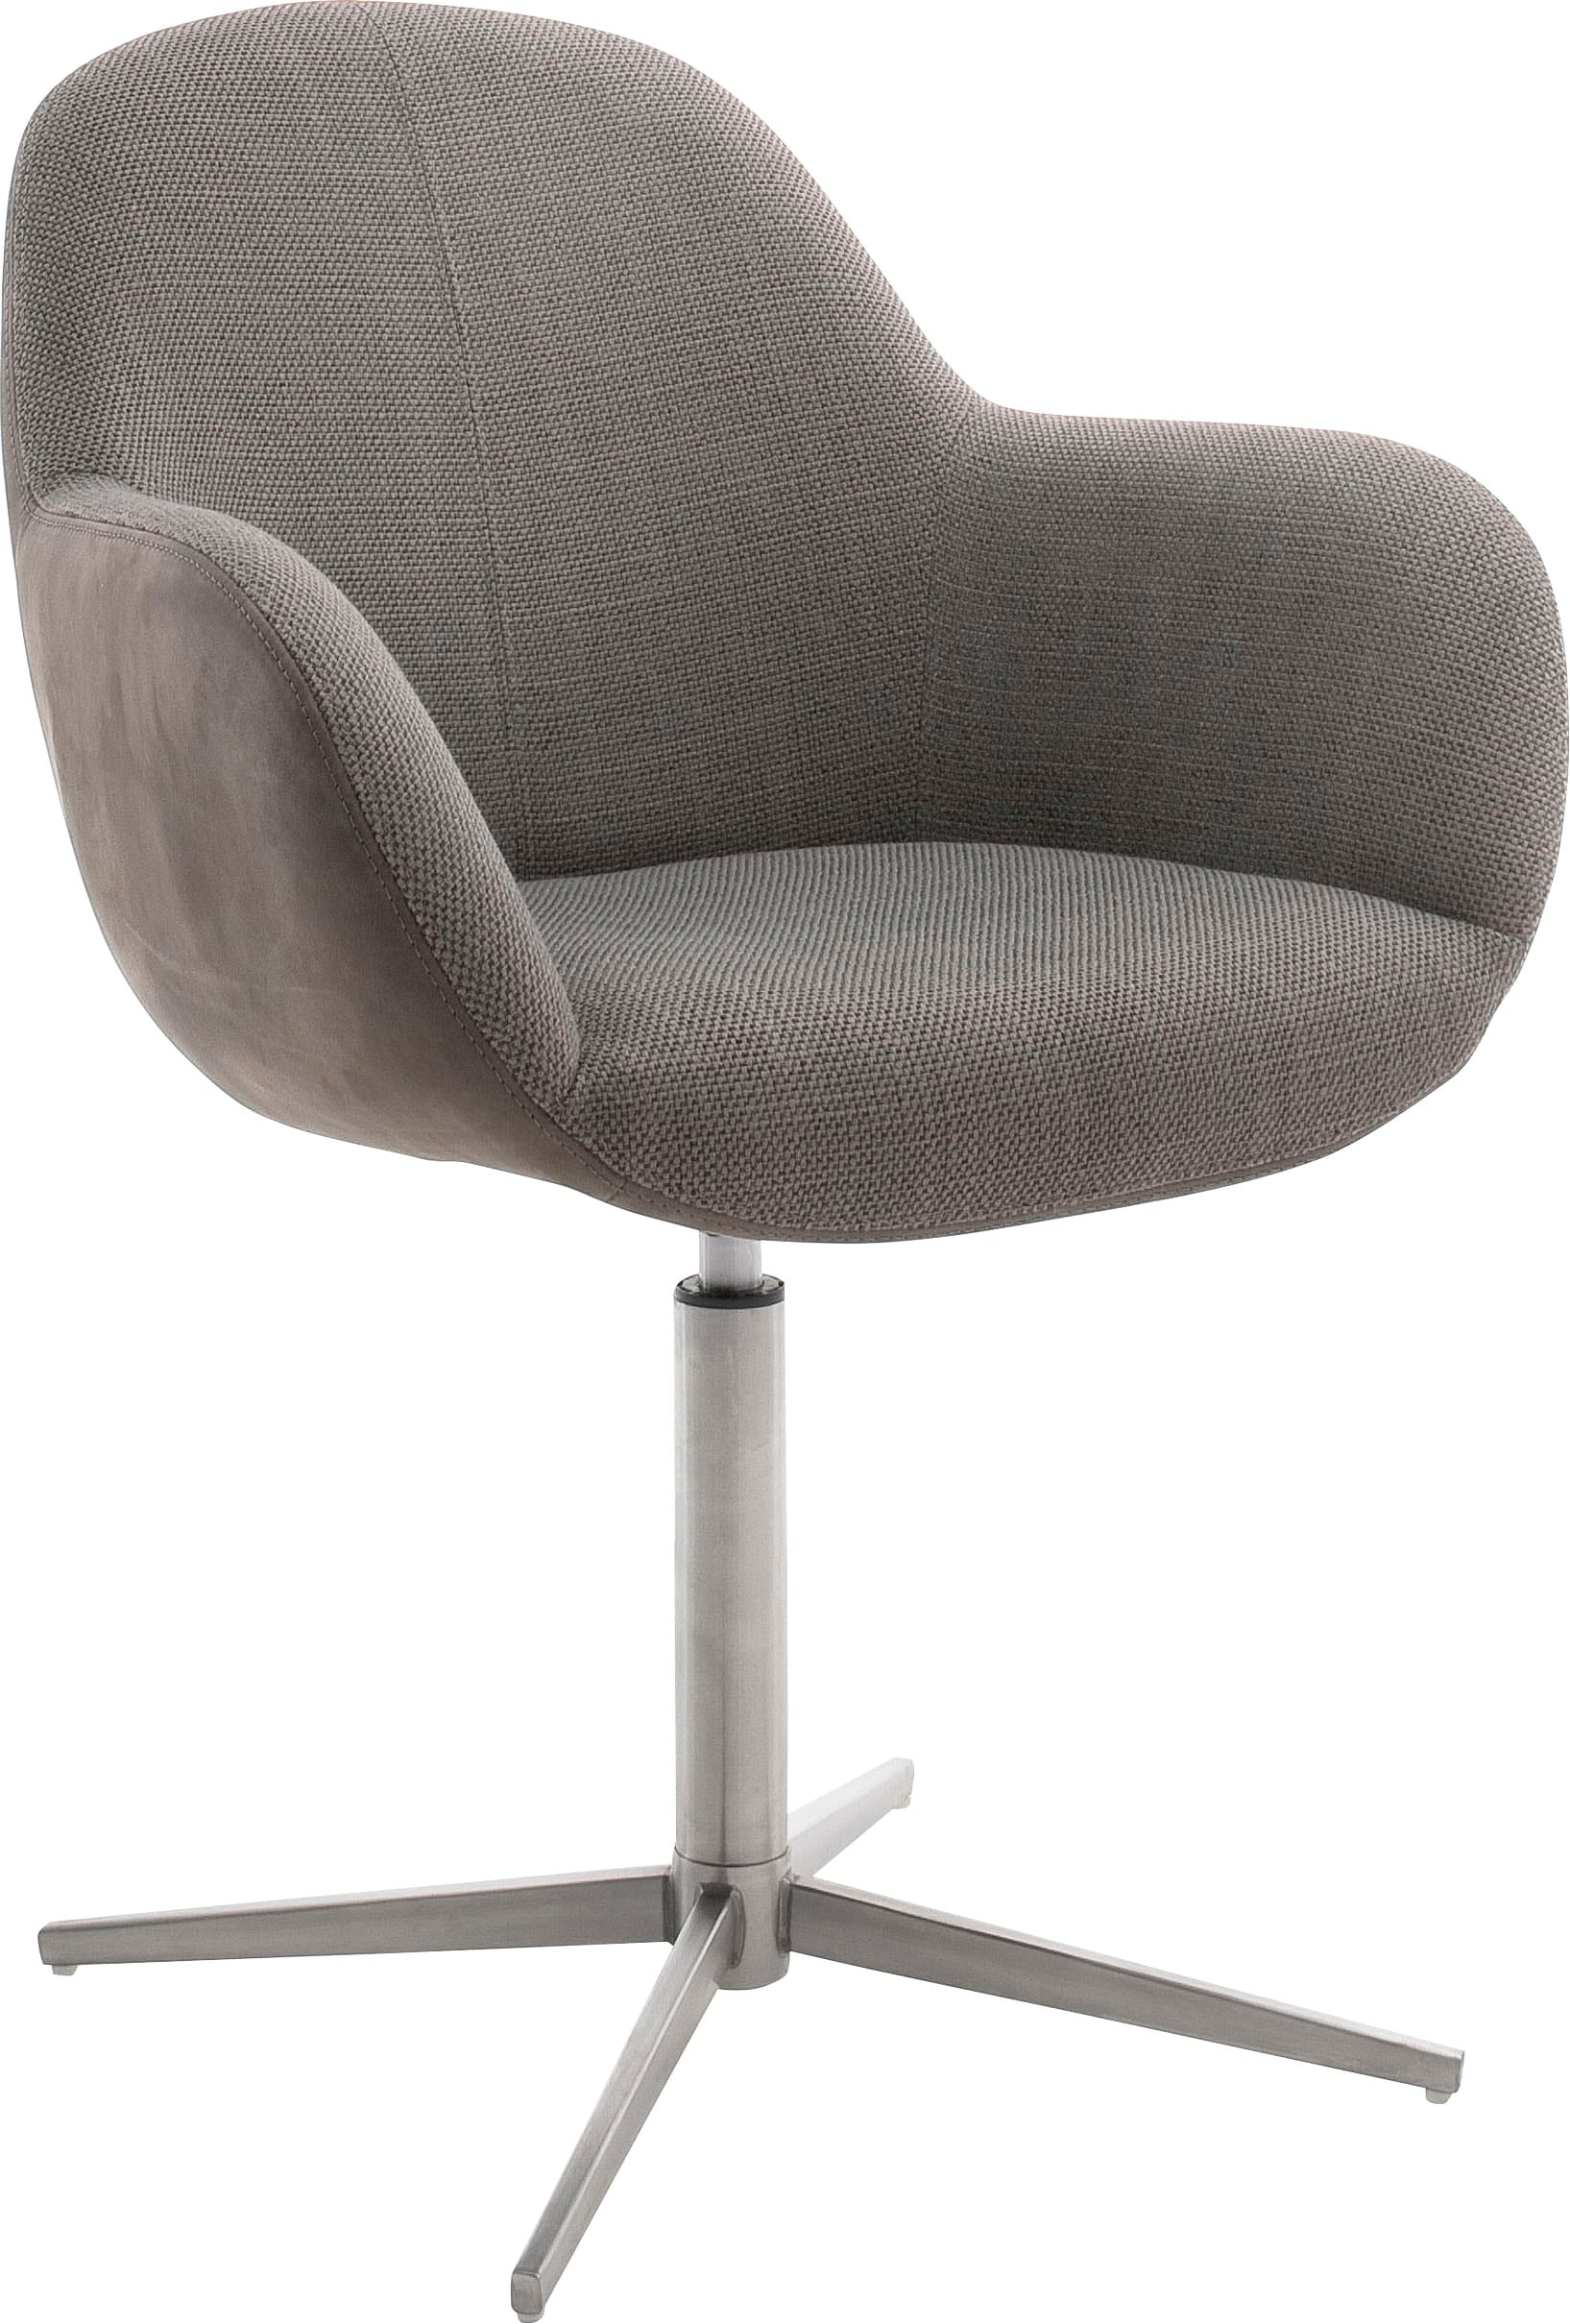 (Set), mit furniture St., jetzt »Melrose«, MCA 2 Esszimmerstuhl Nivellierung kaufen Stuhl 360°drehbar